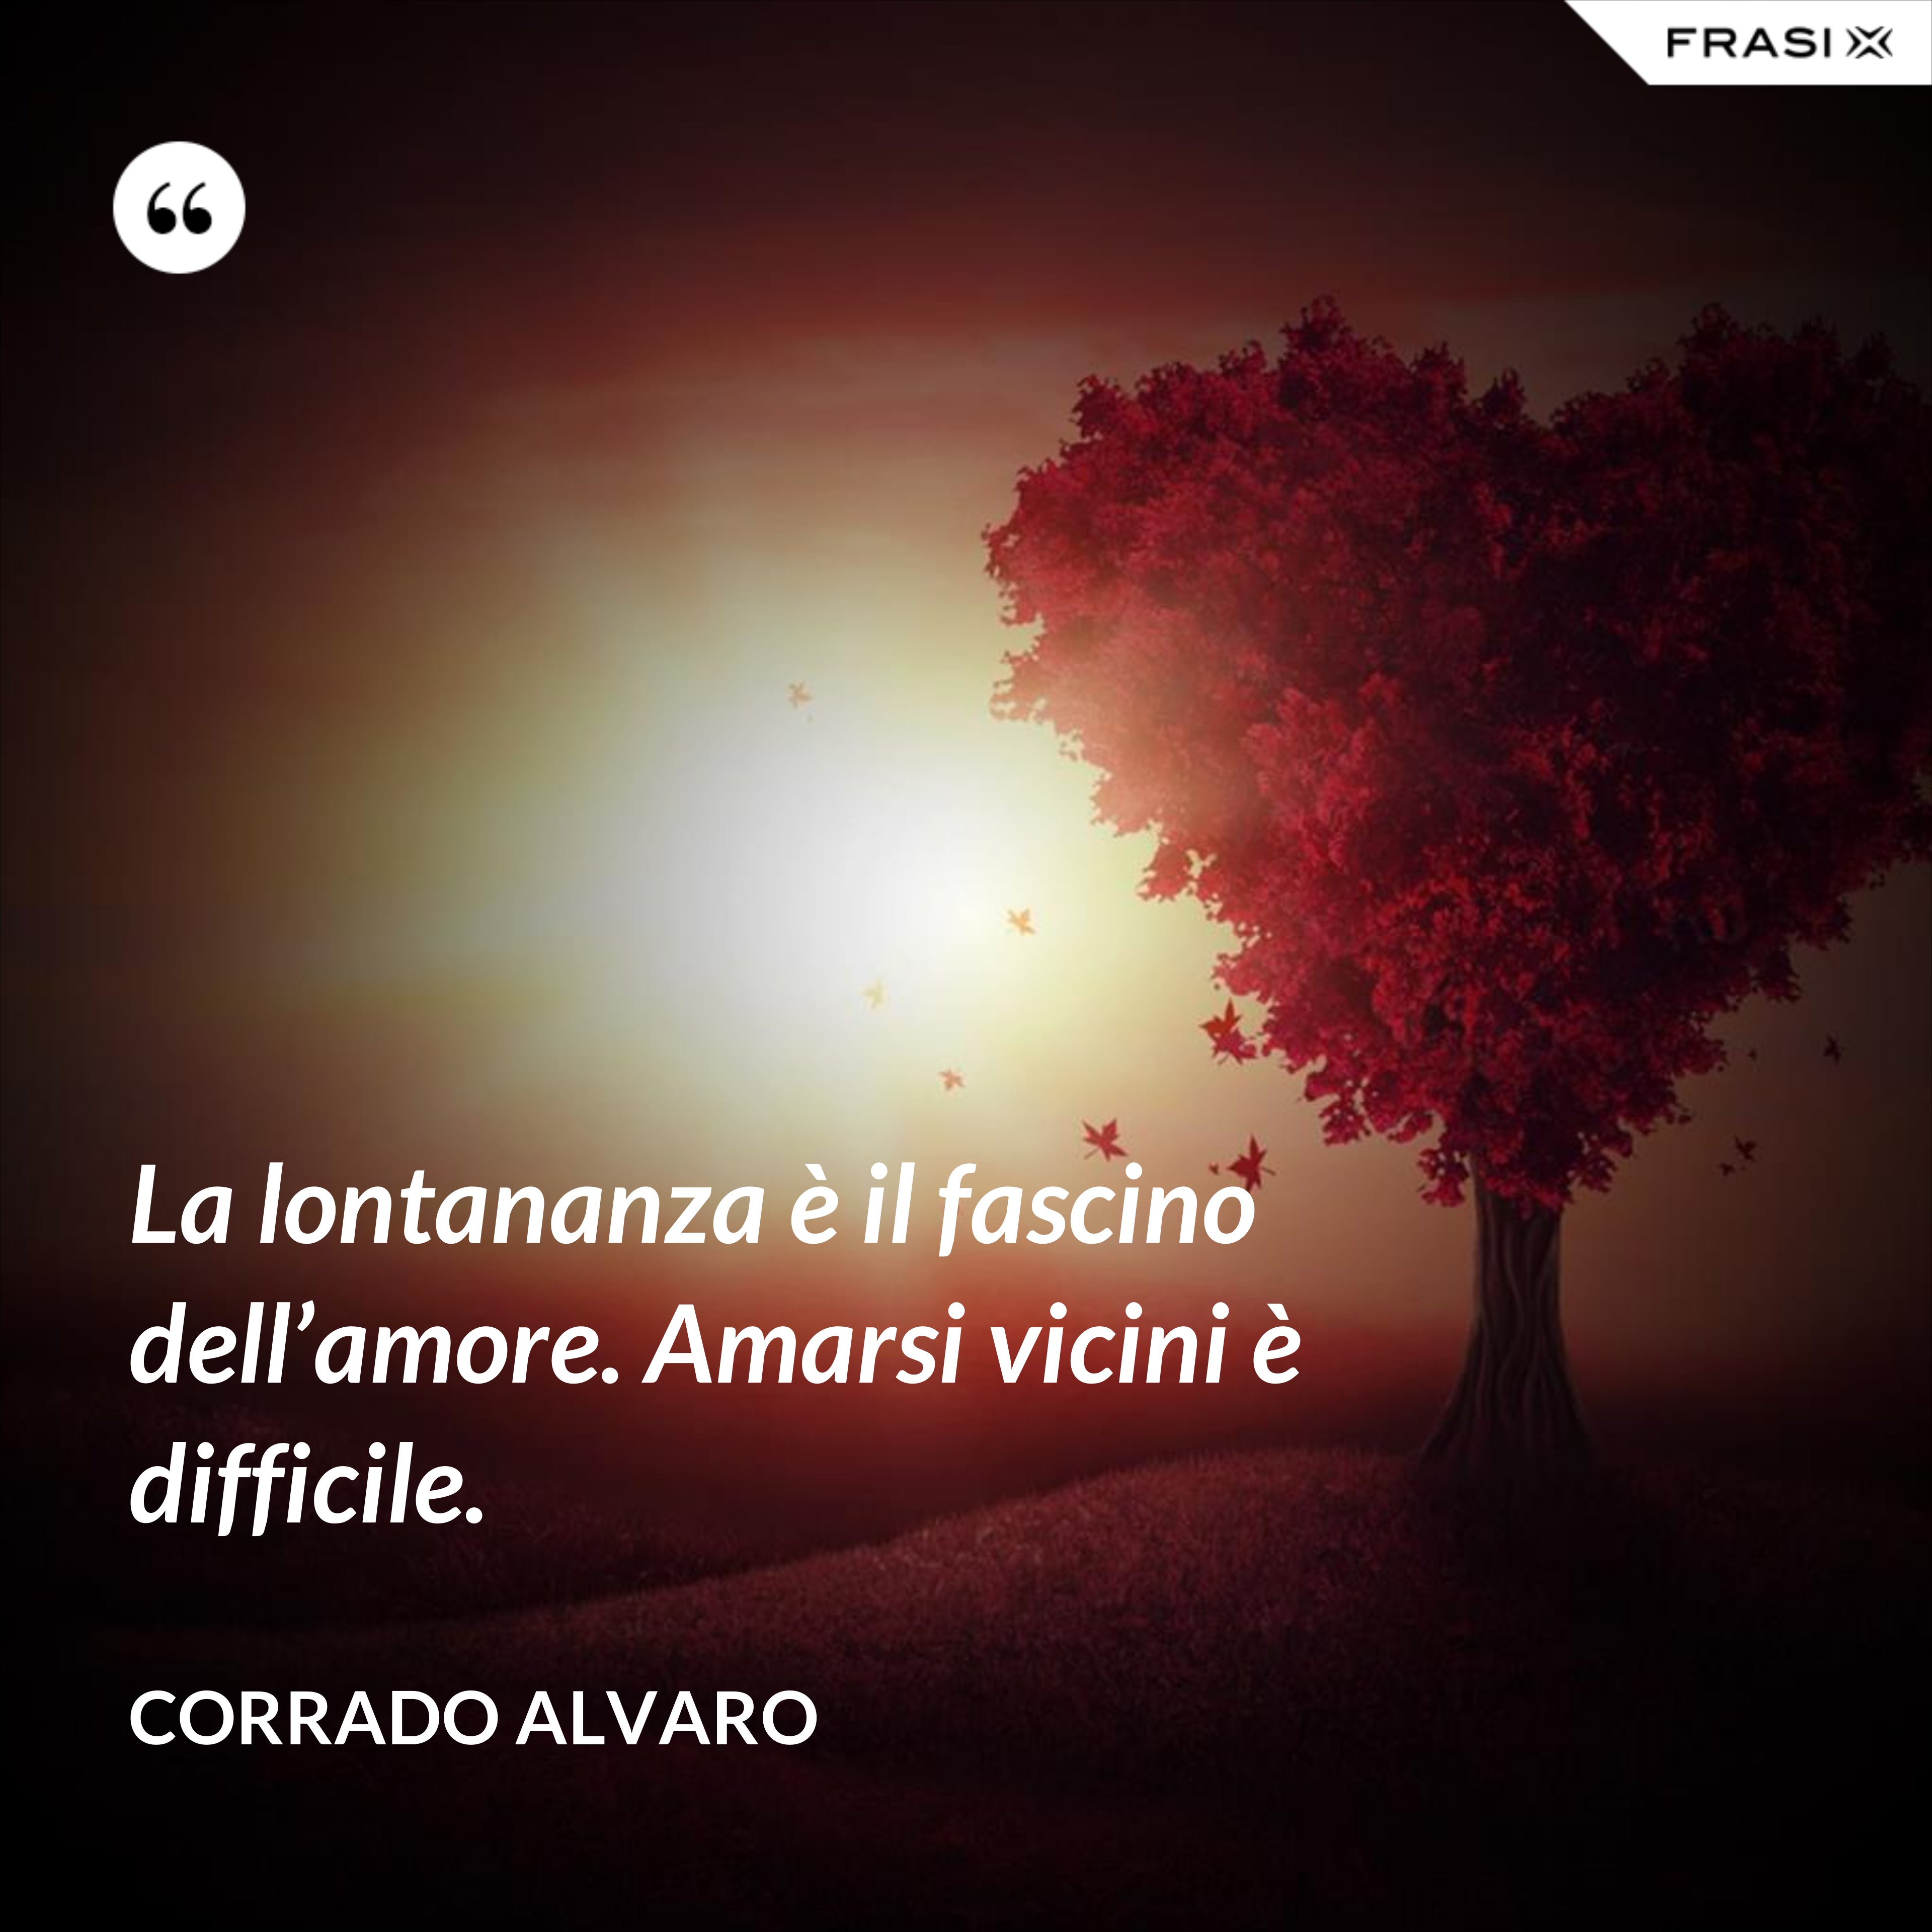 La lontananza è il fascino dell’amore. Amarsi vicini è difficile. - Corrado Alvaro